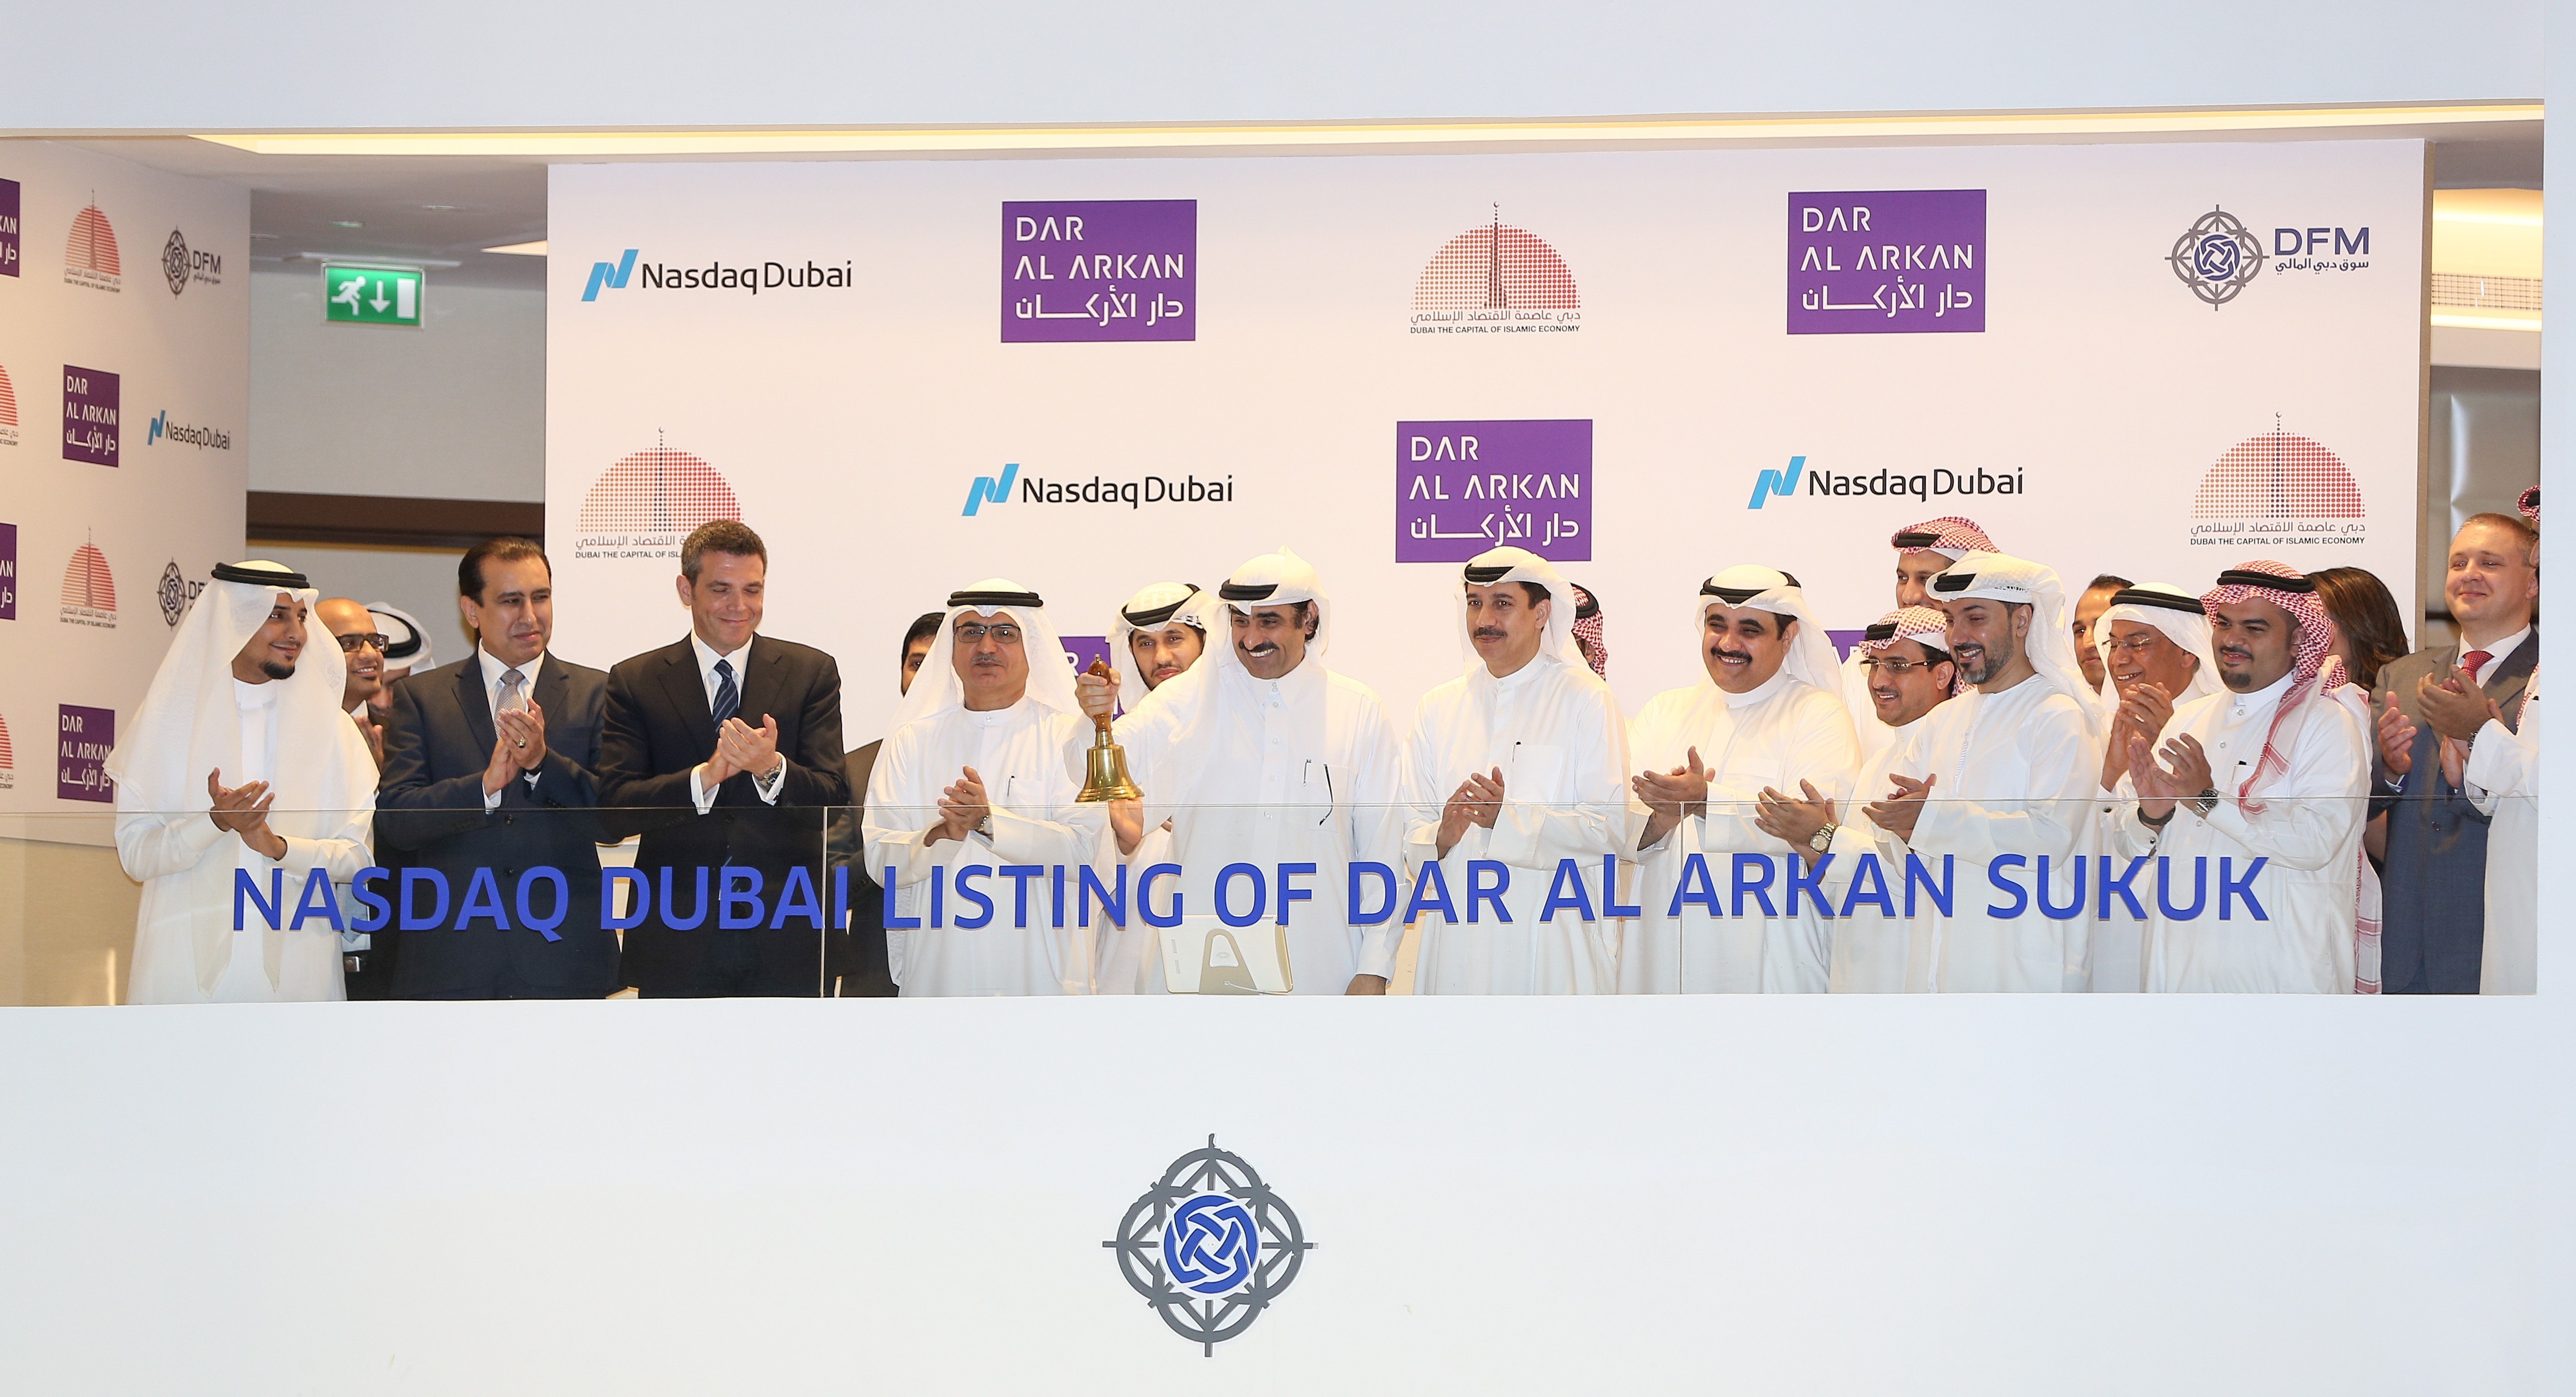  رئيس مجلس إدارة شركة "دار الأركان" يوسف بن عبد الله الشلاش يقرع جرس افتتاح السوق احتفالًا بإدراج صكوك بقيمة 500 مليون دولار أمريكي في ناسداك دبي